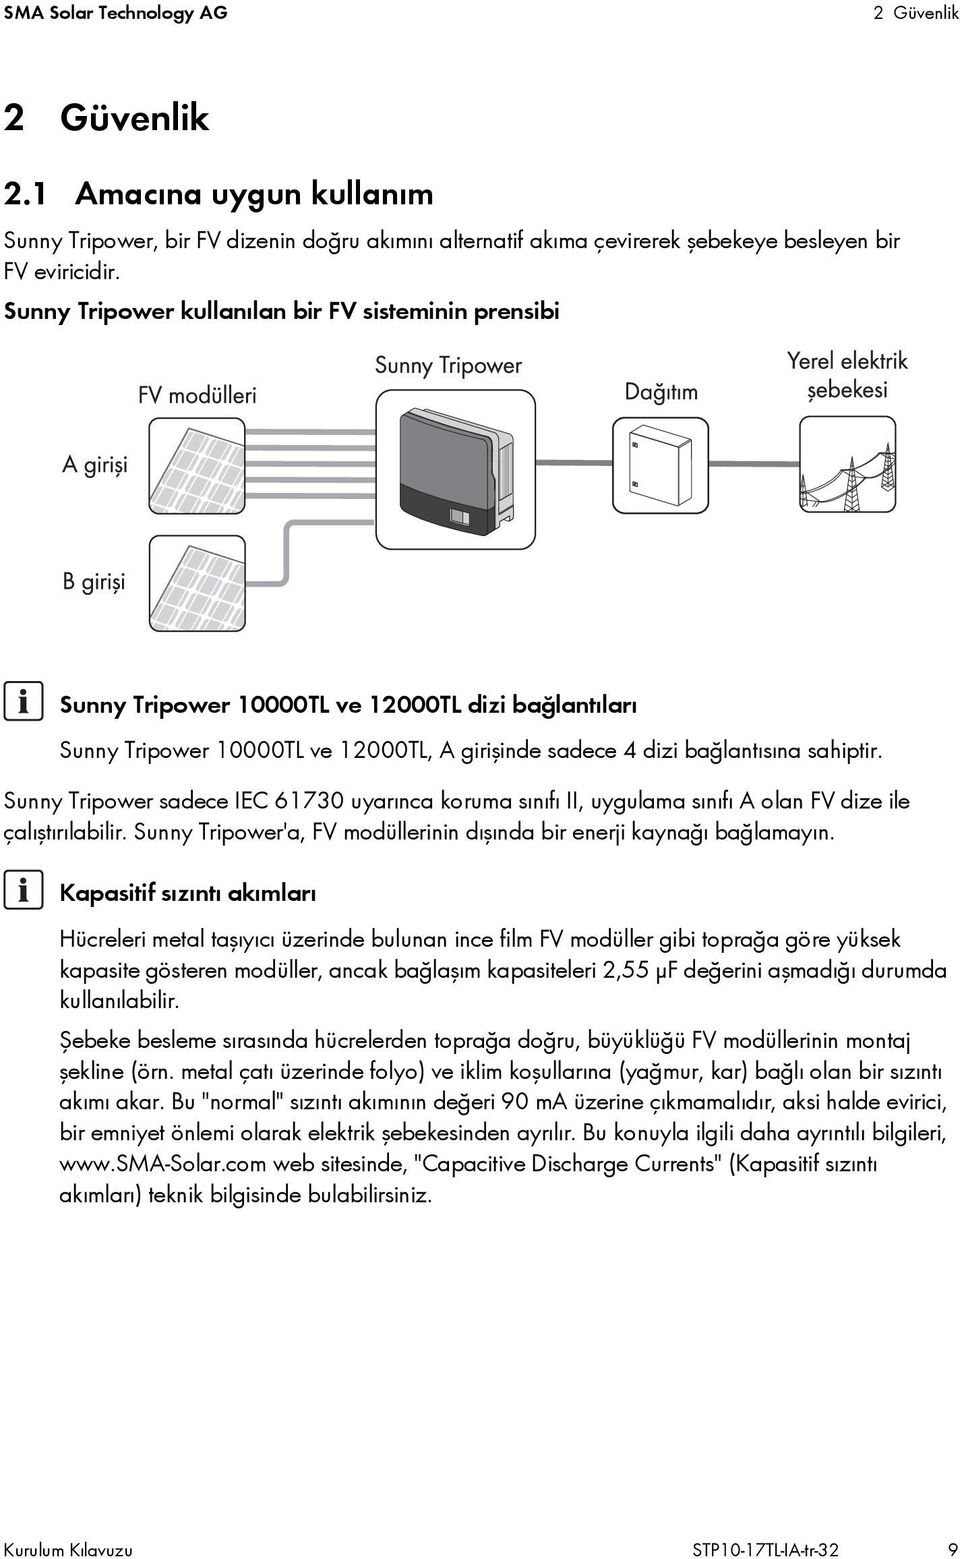 Sunny Tripower sadece IEC 61730 uyarınca koruma sınıfı II, uygulama sınıfı A olan FV dize ile çalıştırılabilir. Sunny Tripower'a, FV modüllerinin dışında bir enerji kaynağı bağlamayın.